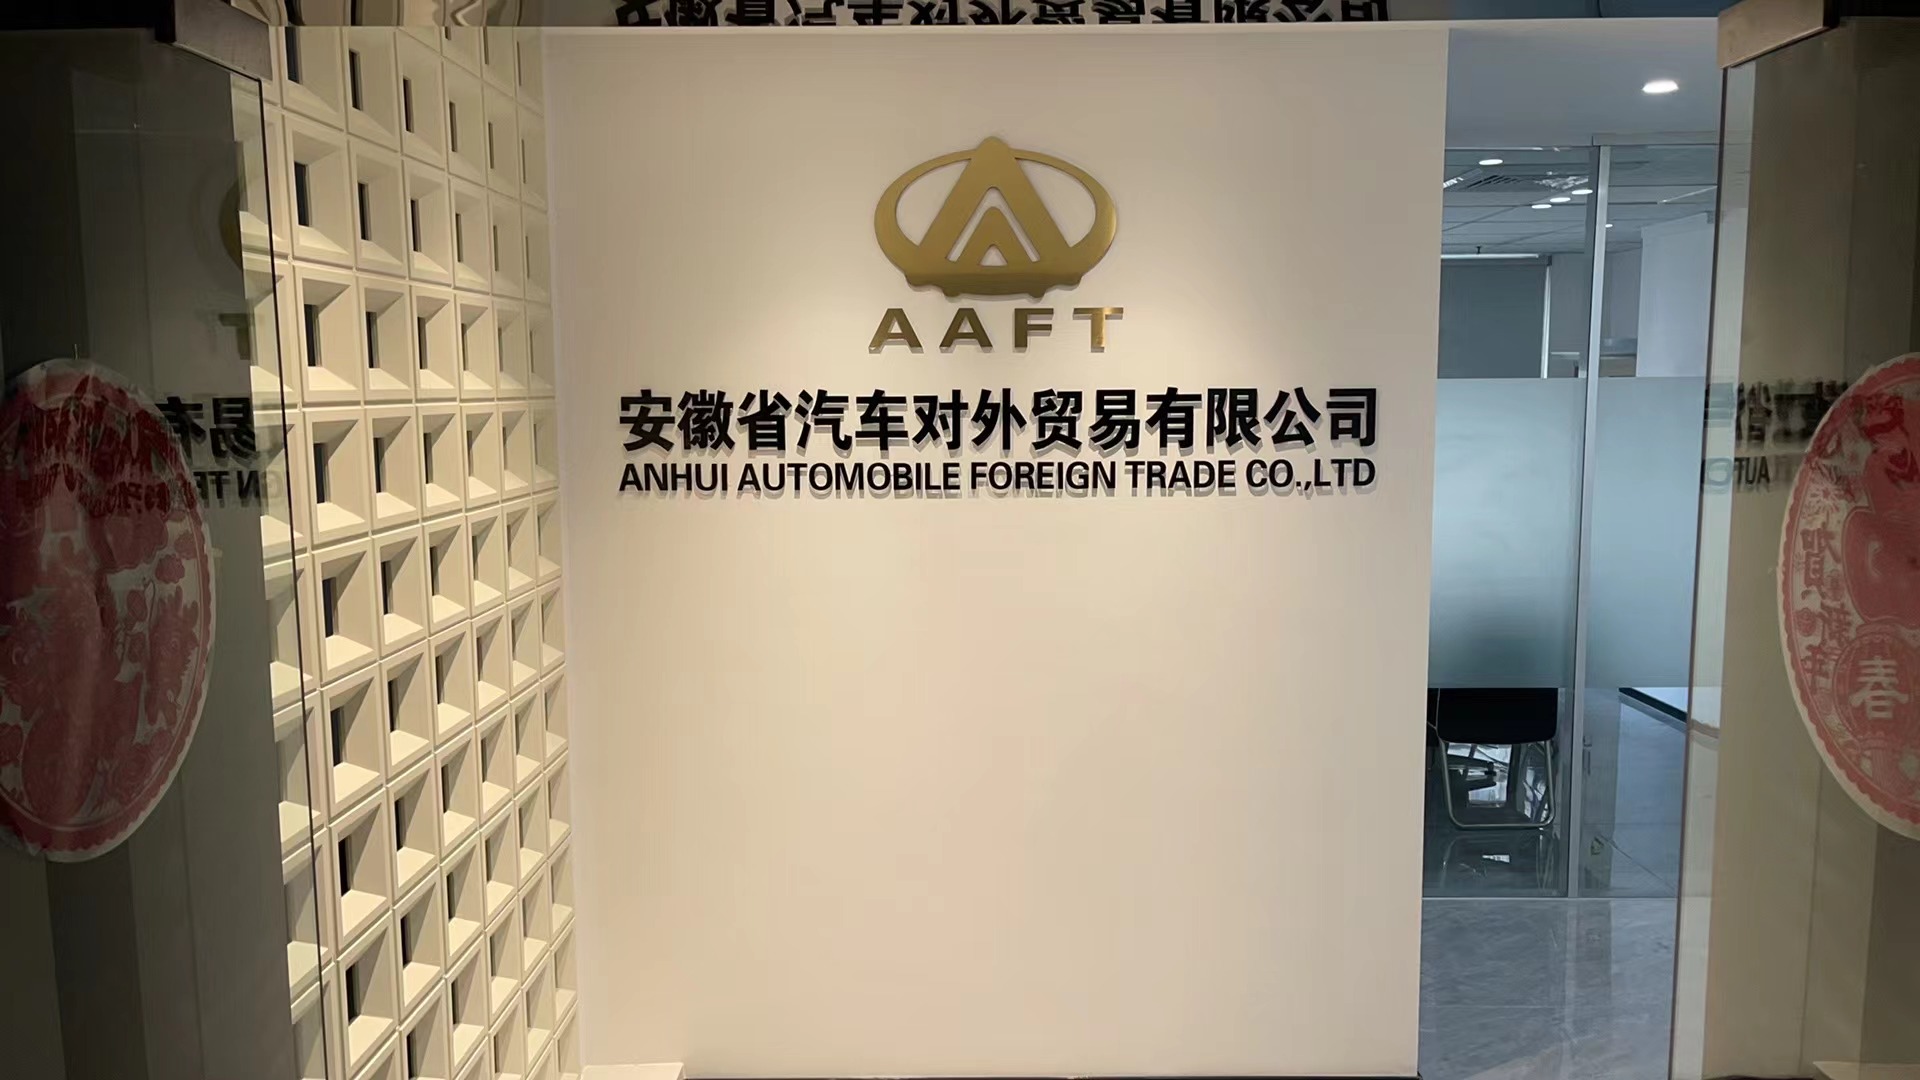 Anhui Automobile Foreign Trade Co.,Ltd.